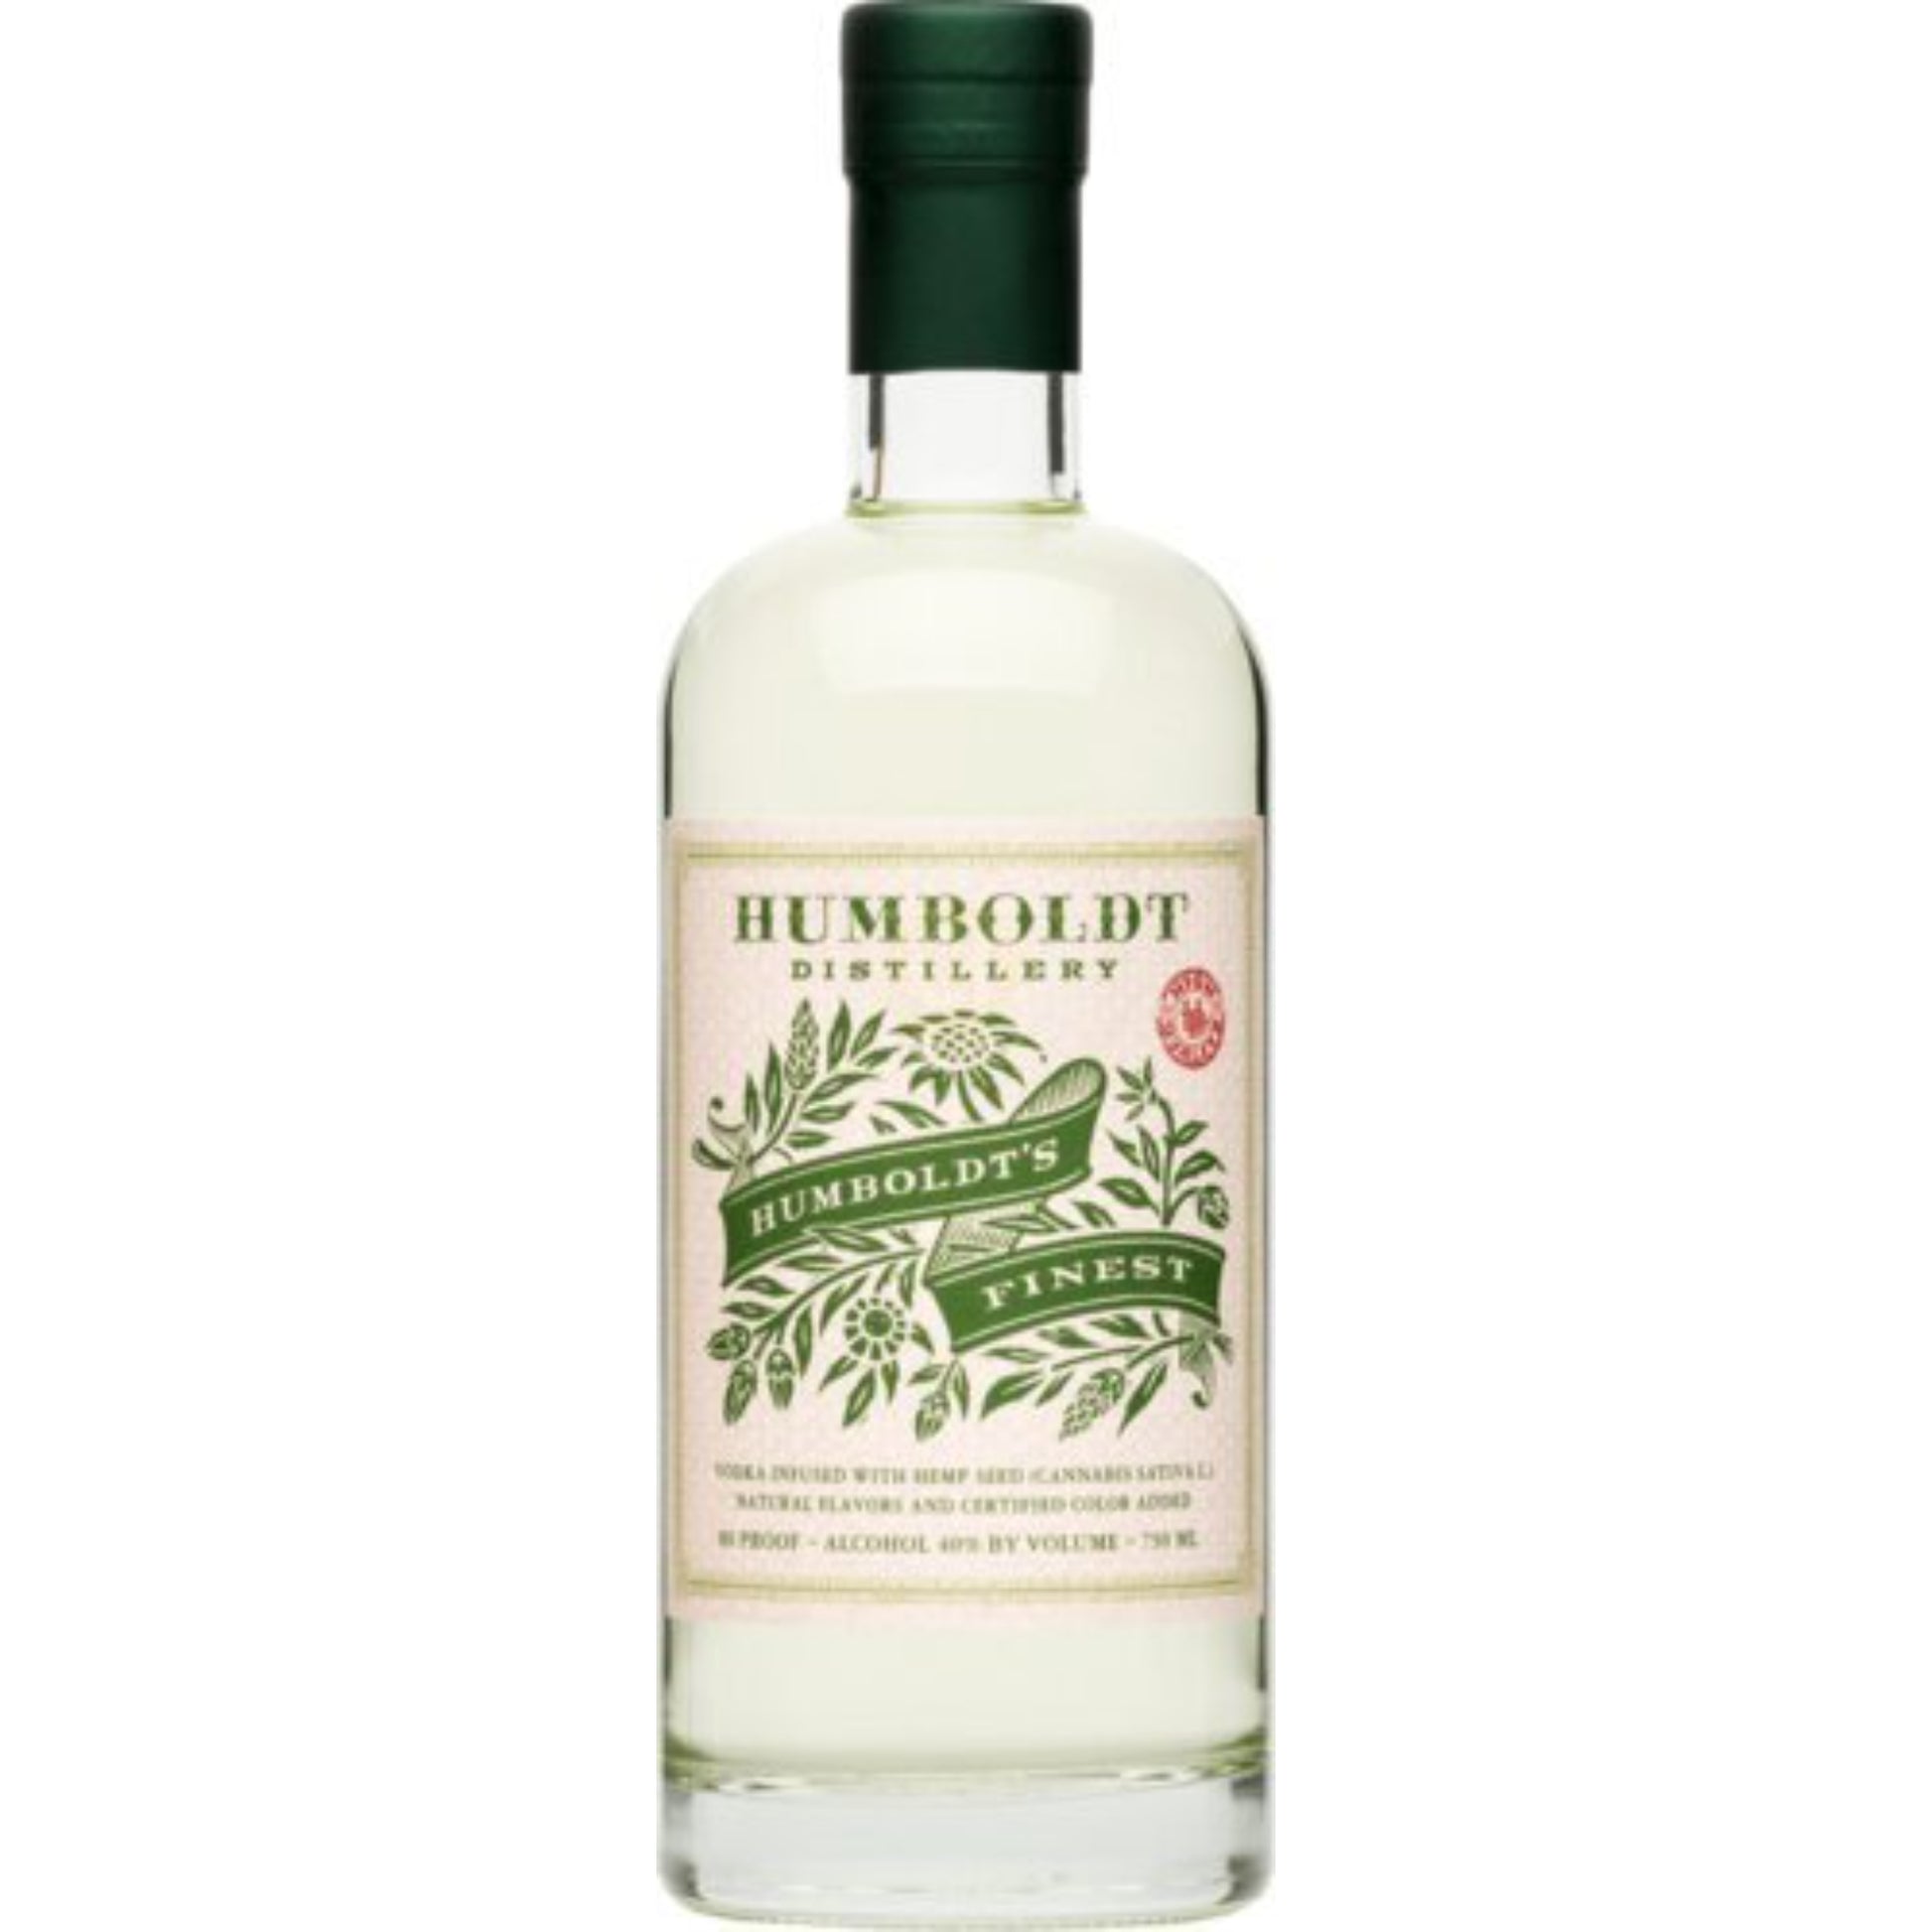 Humboldt's Finest Hemp-Infused Vodka - Liquor Geeks